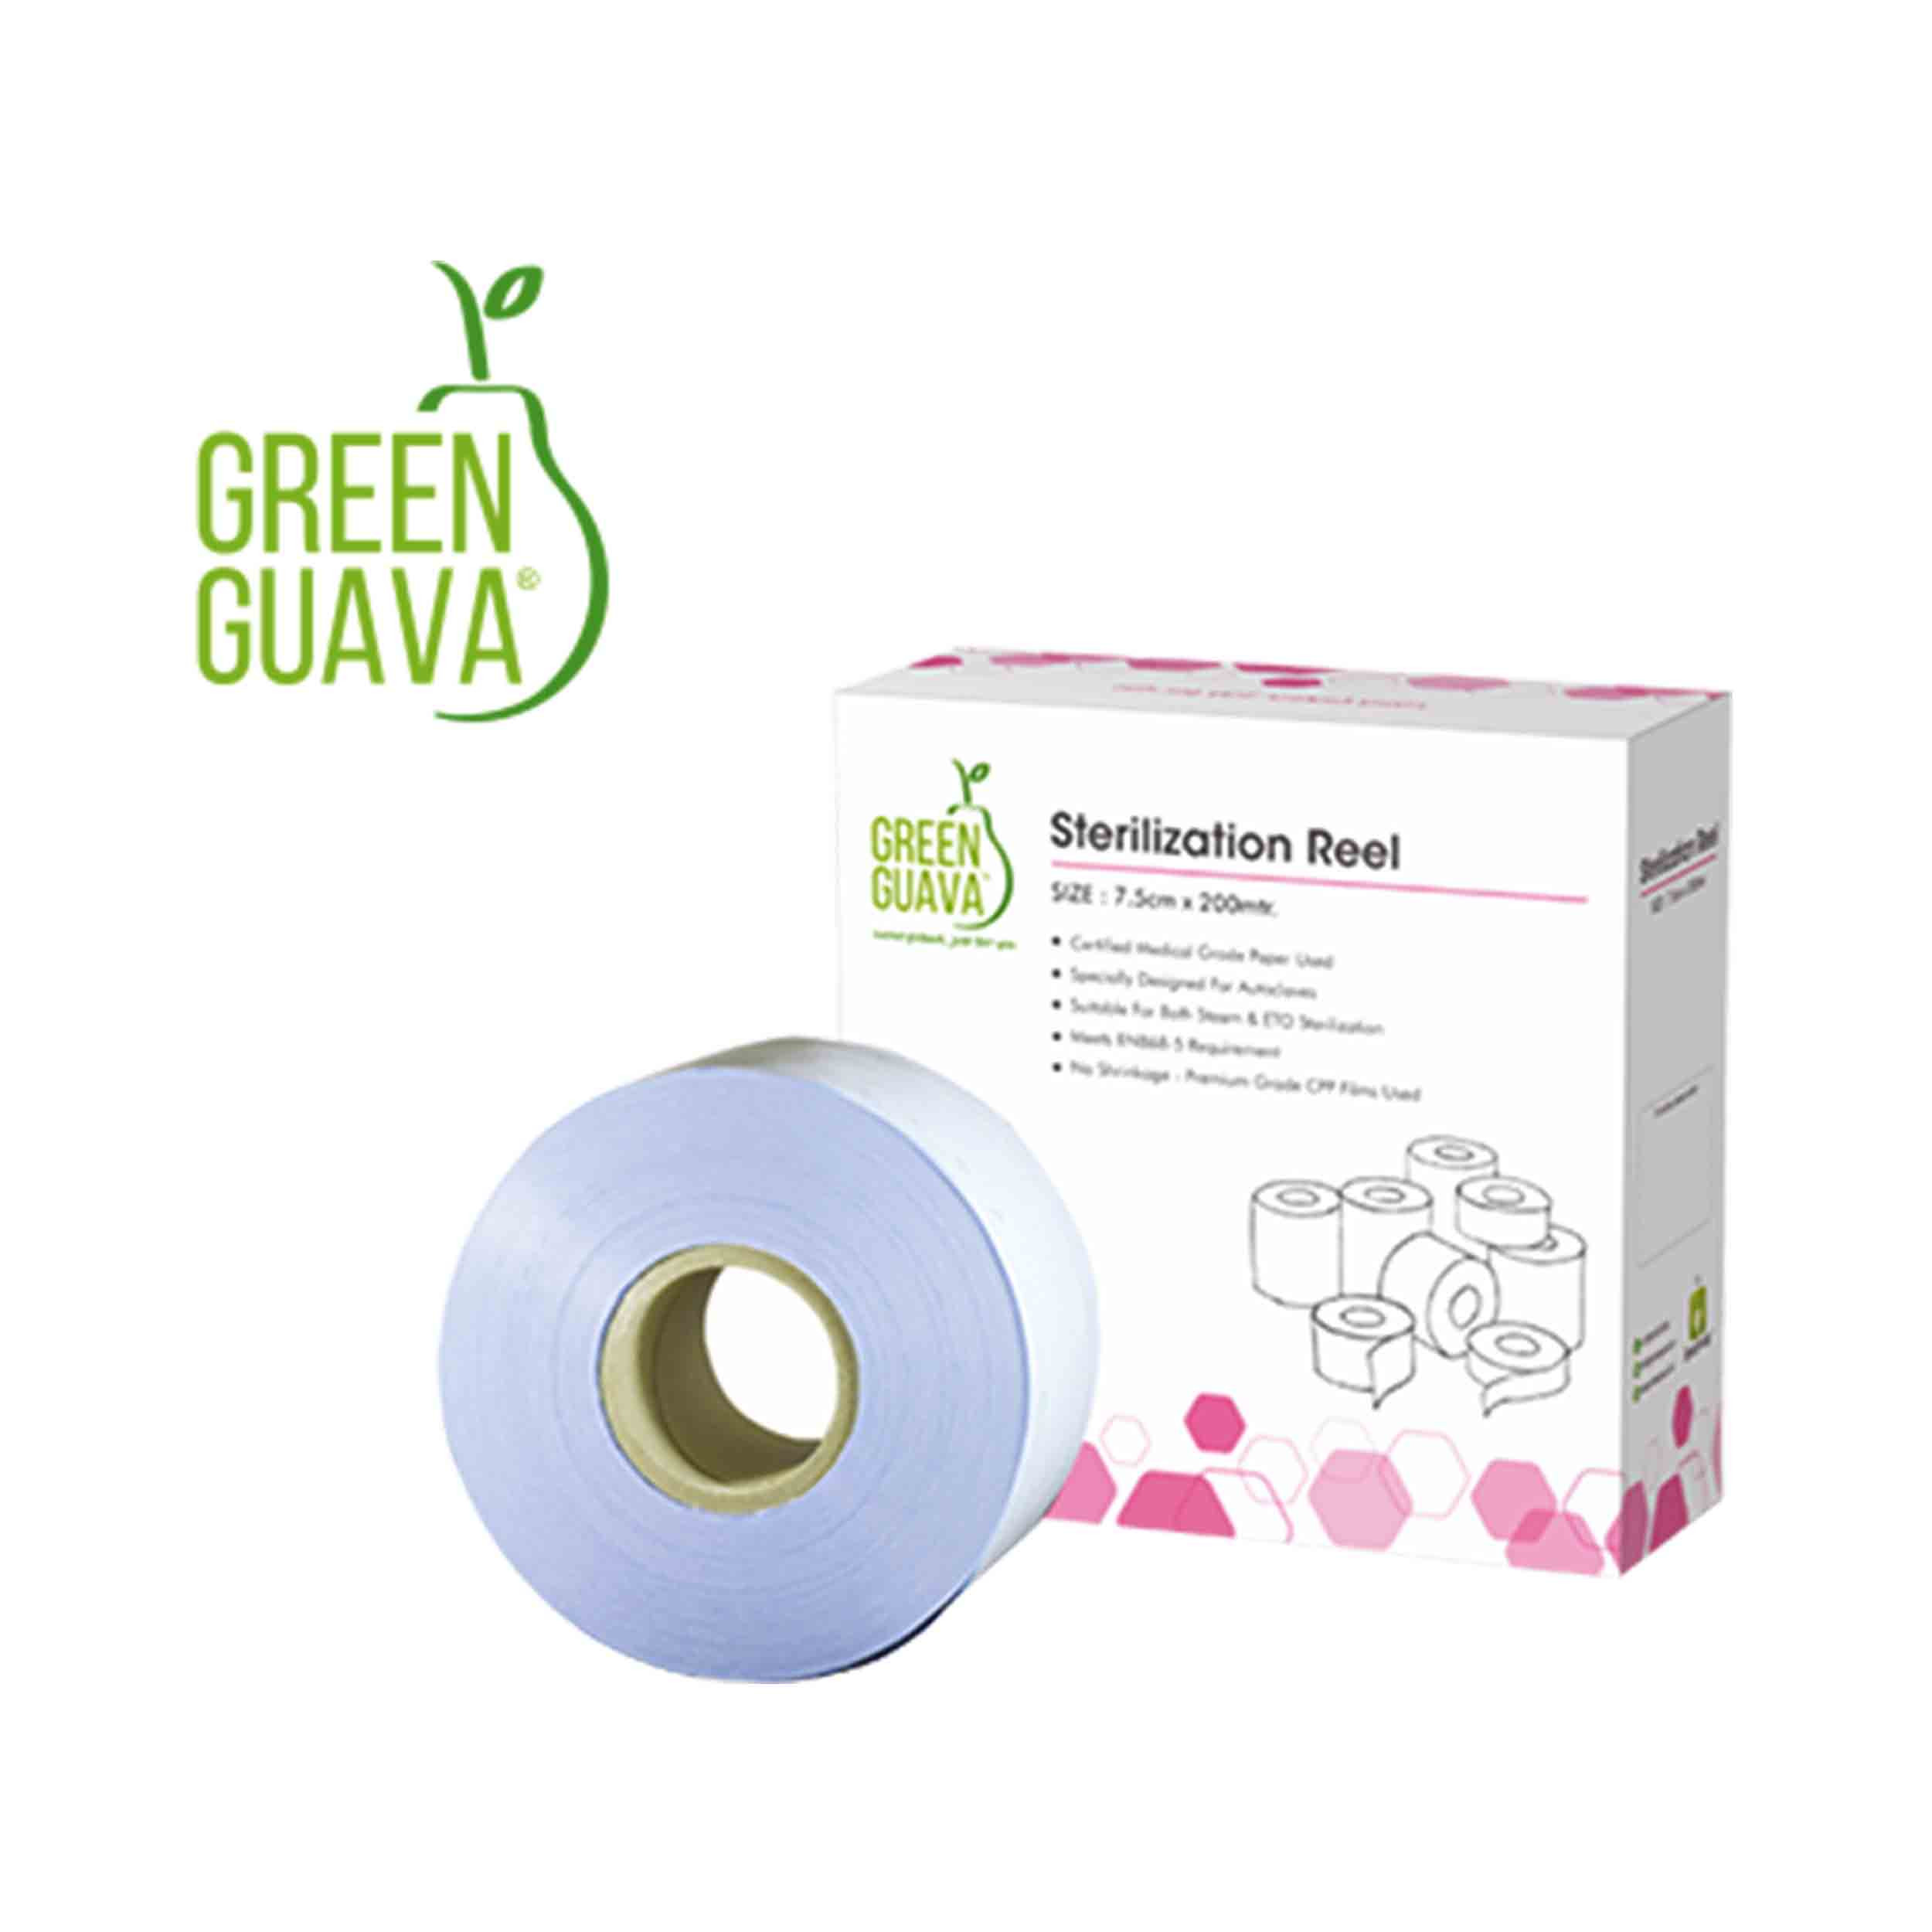 Green Guava Sterlization reel 75mm x 200 mtr.